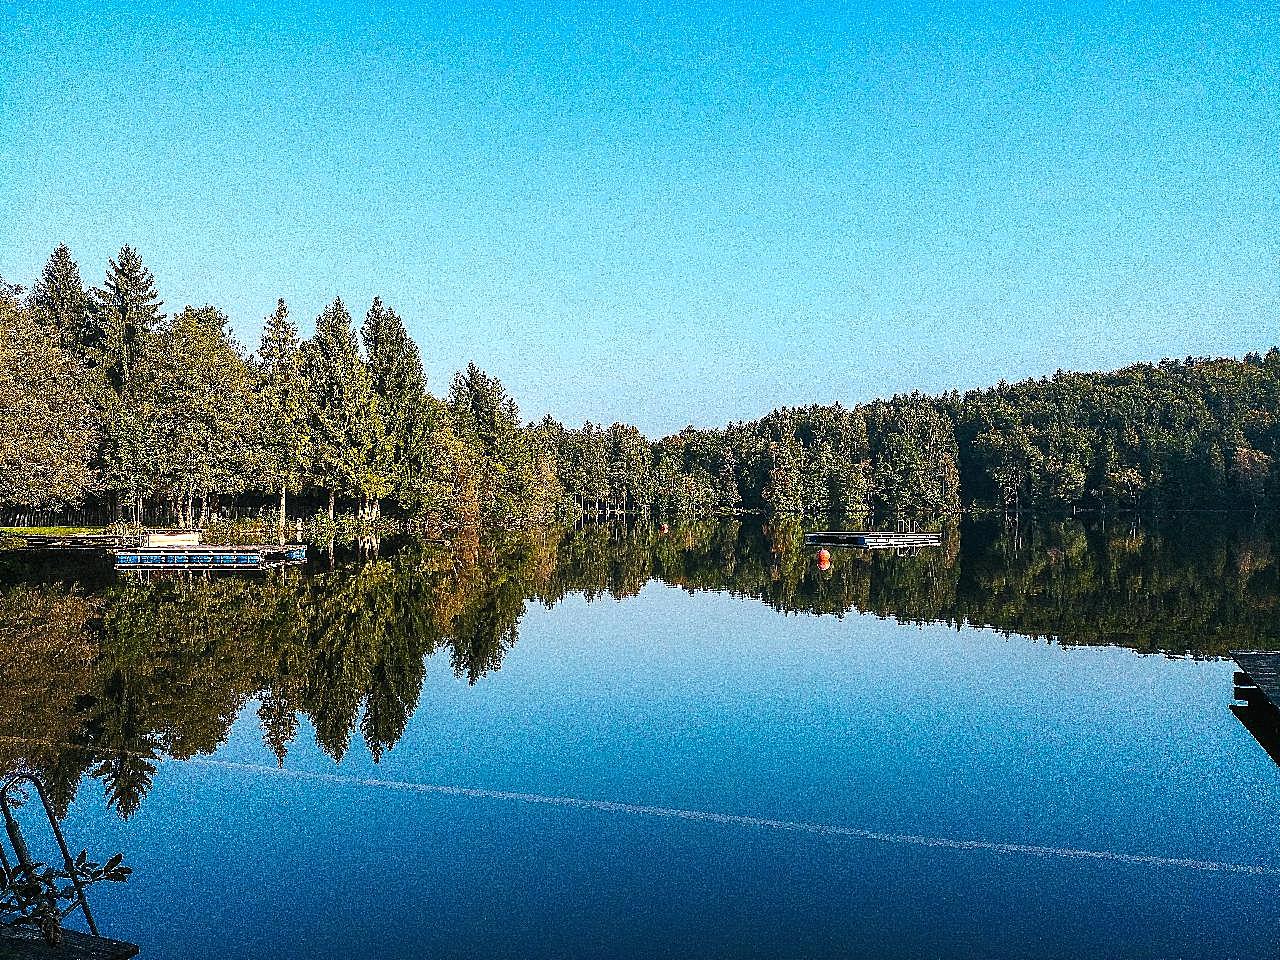 蔚蓝湖泊景观图片高清摄影